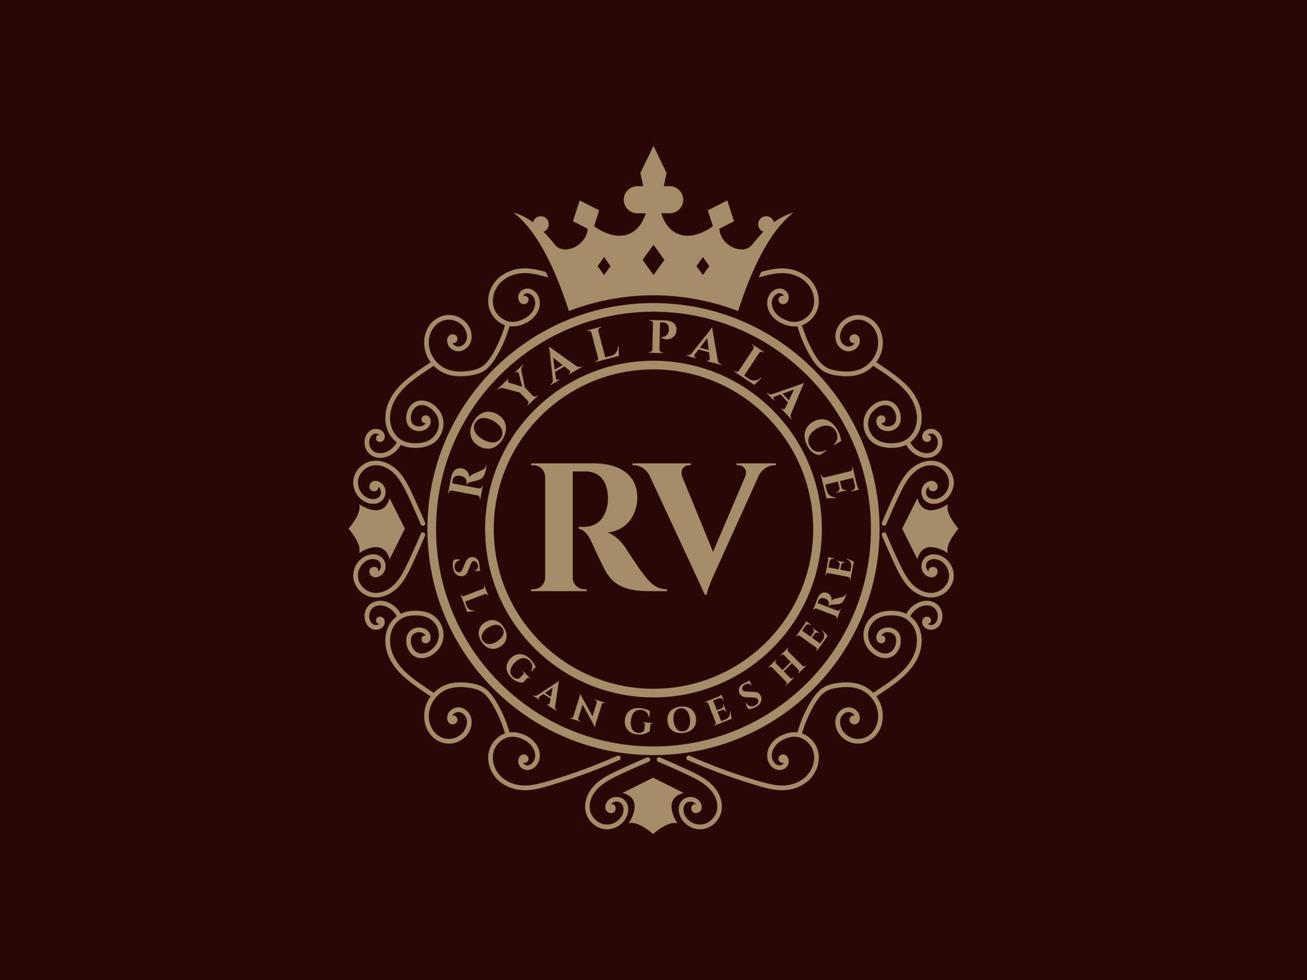 carta rv antigo logotipo vitoriano de luxo real com moldura ornamental. vetor